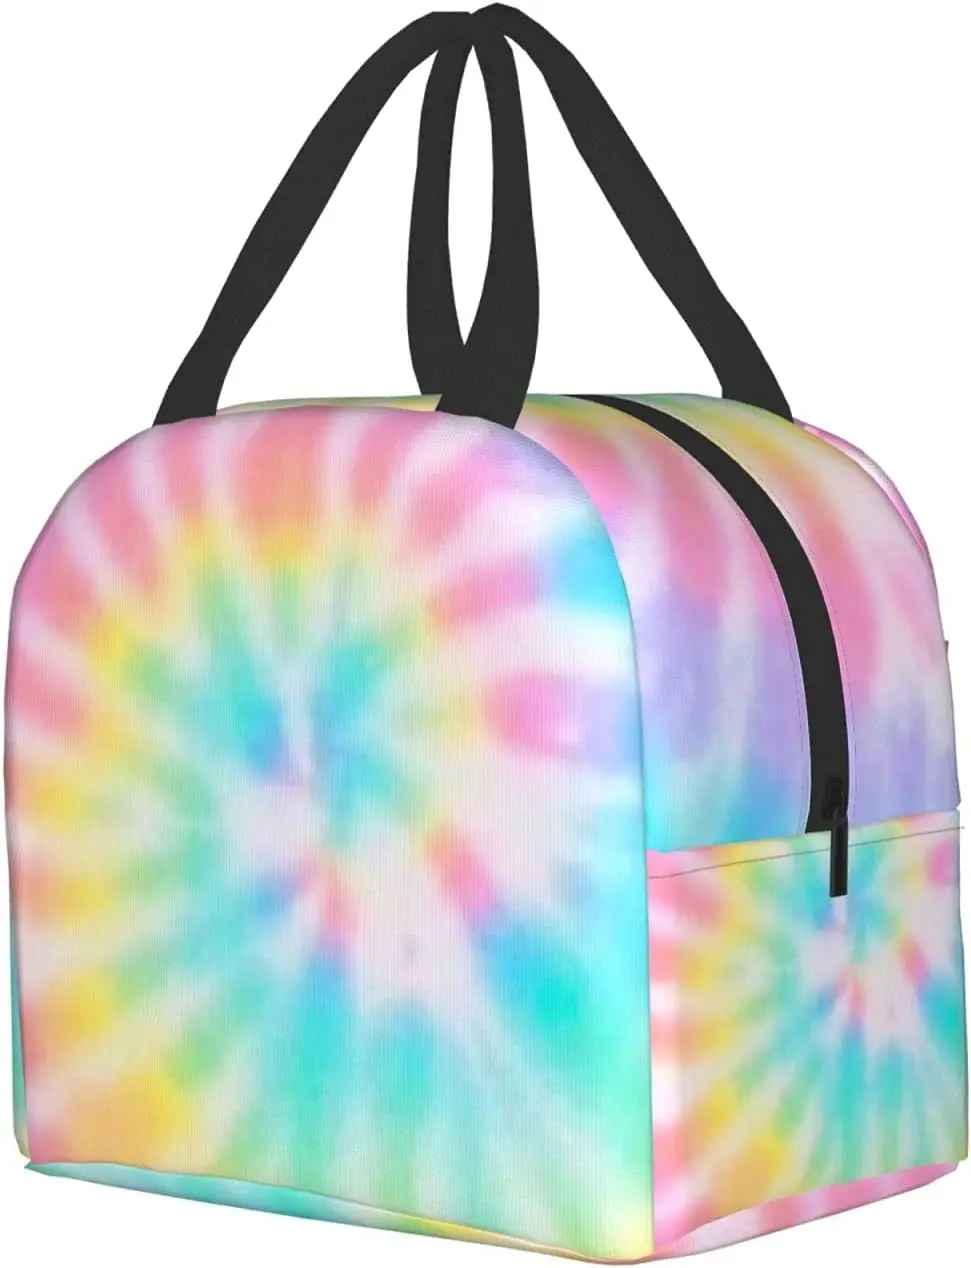 Ланч-бокс с рисунком радужной краски для галстуков Изолированная сумка для ланча для женщин и мужчин Bento Bag Контейнер для пикника Coolbag многоразового использования Водонепроницаемый Изображение 1